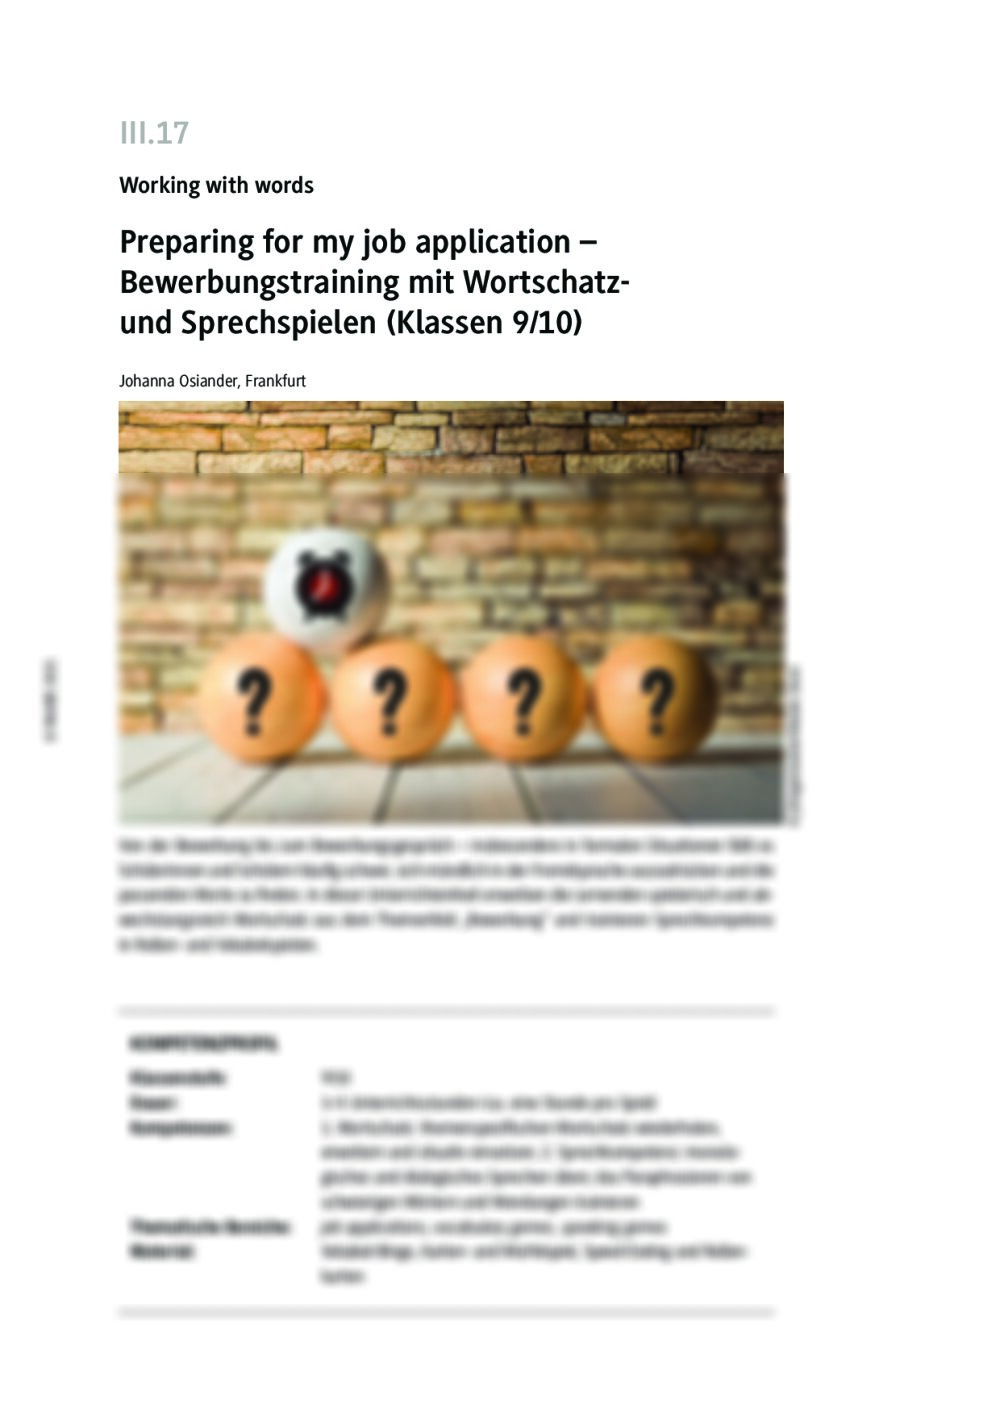 Preparing for my job application: Wortschatz- und Sprechspiele - Seite 1